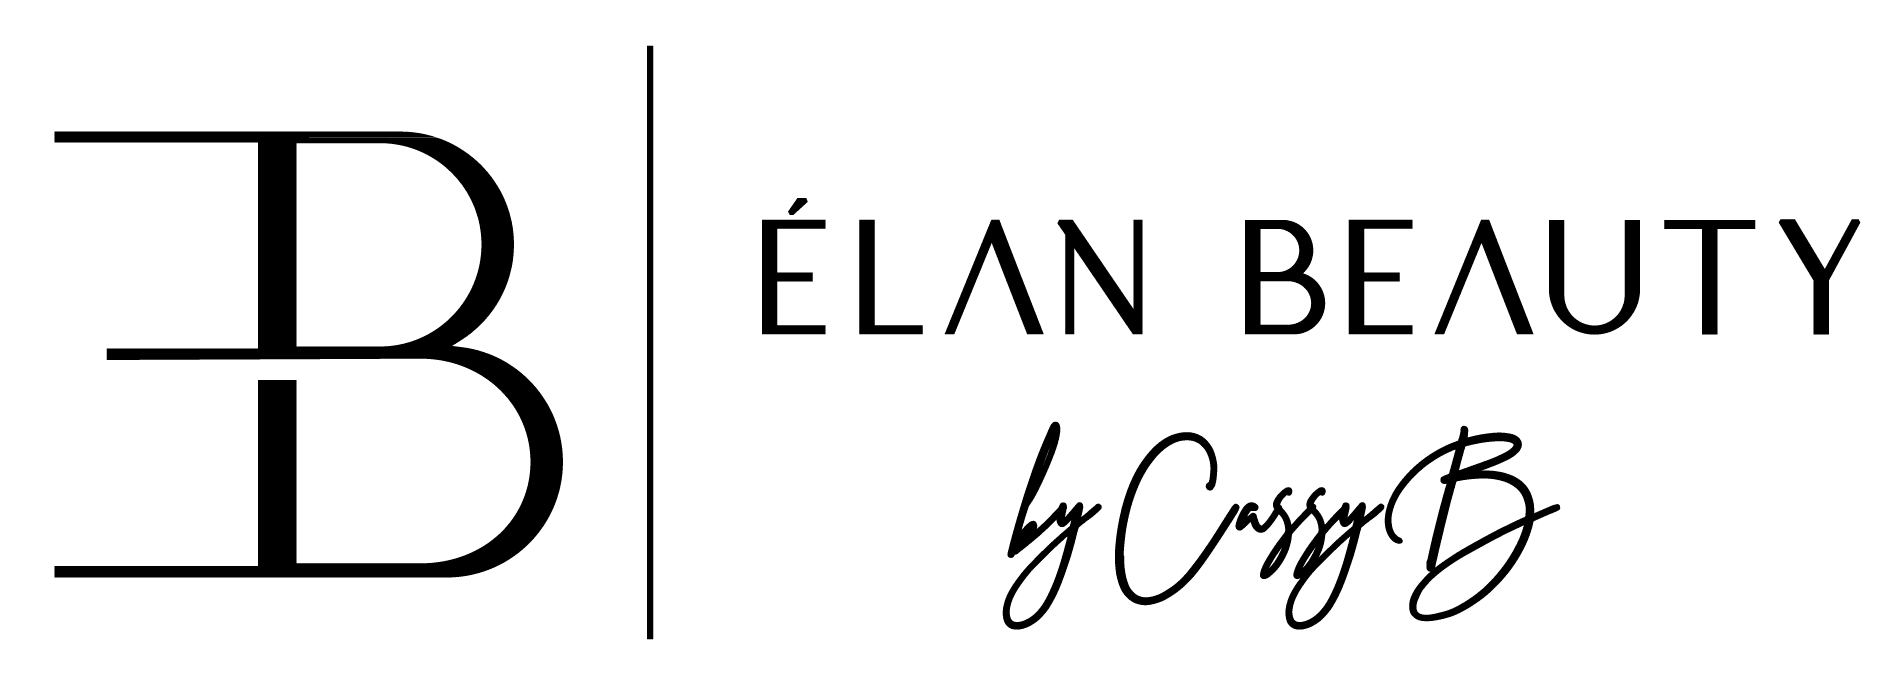 Elan Beauty by CassyB